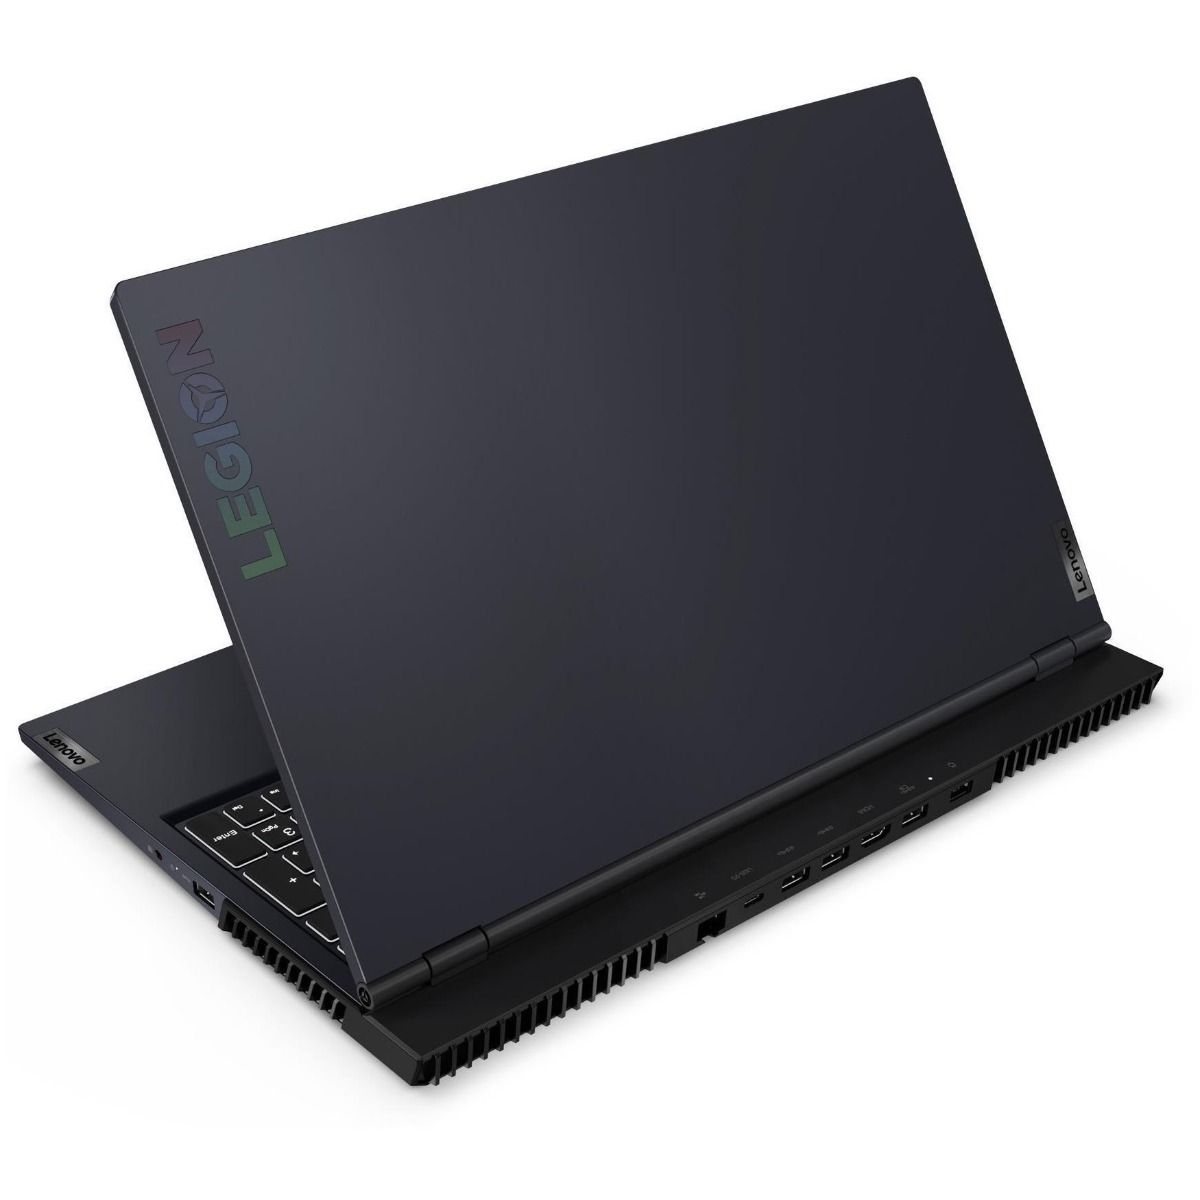 Lenovo Legion 5 15.6" Gaming Laptop AMD Ryzen 5 8GB RAM 512GB RTX 3060